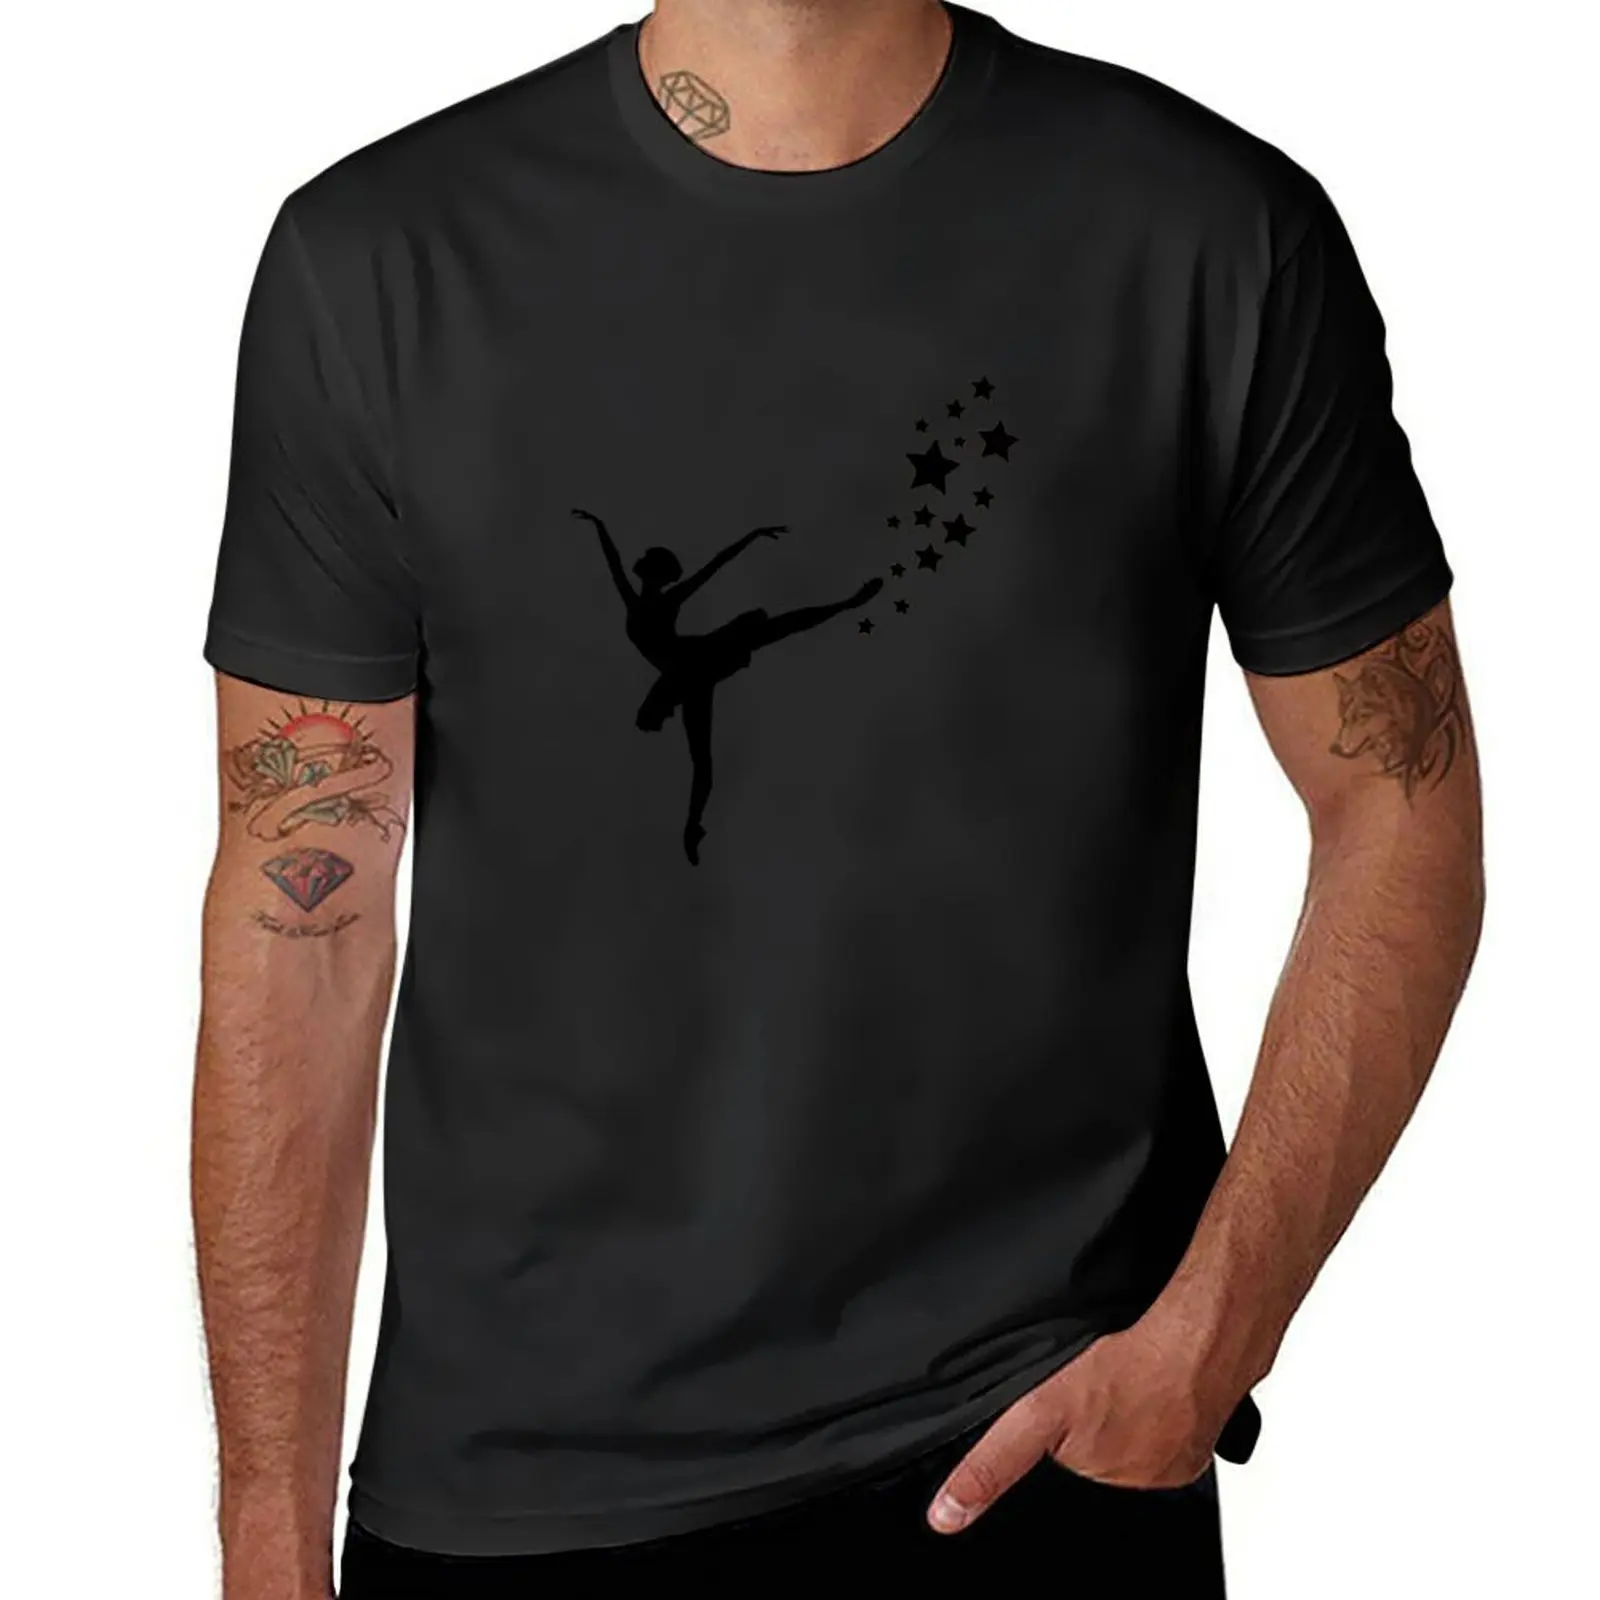 

Новая футболка с надписью «Just A Girl, которая любит баллет», простая футболка для балерины, футболка для мальчика, короткие мужские футболки